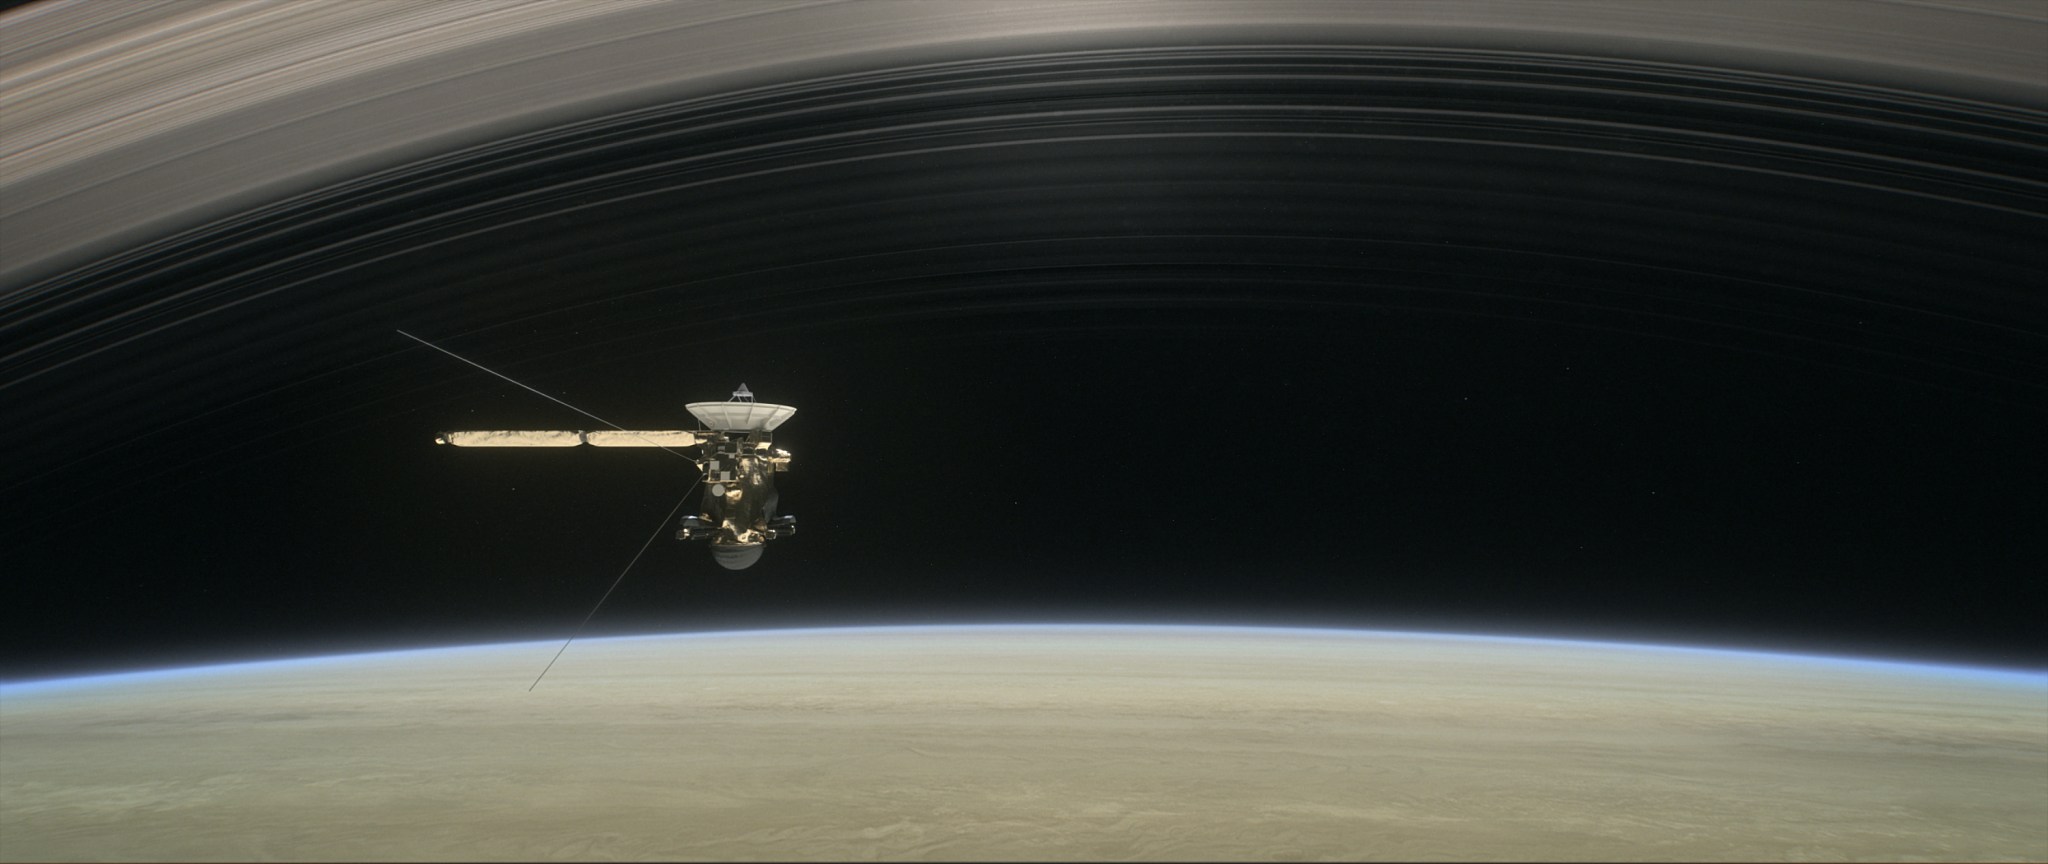 Artist's rendering of Cassini